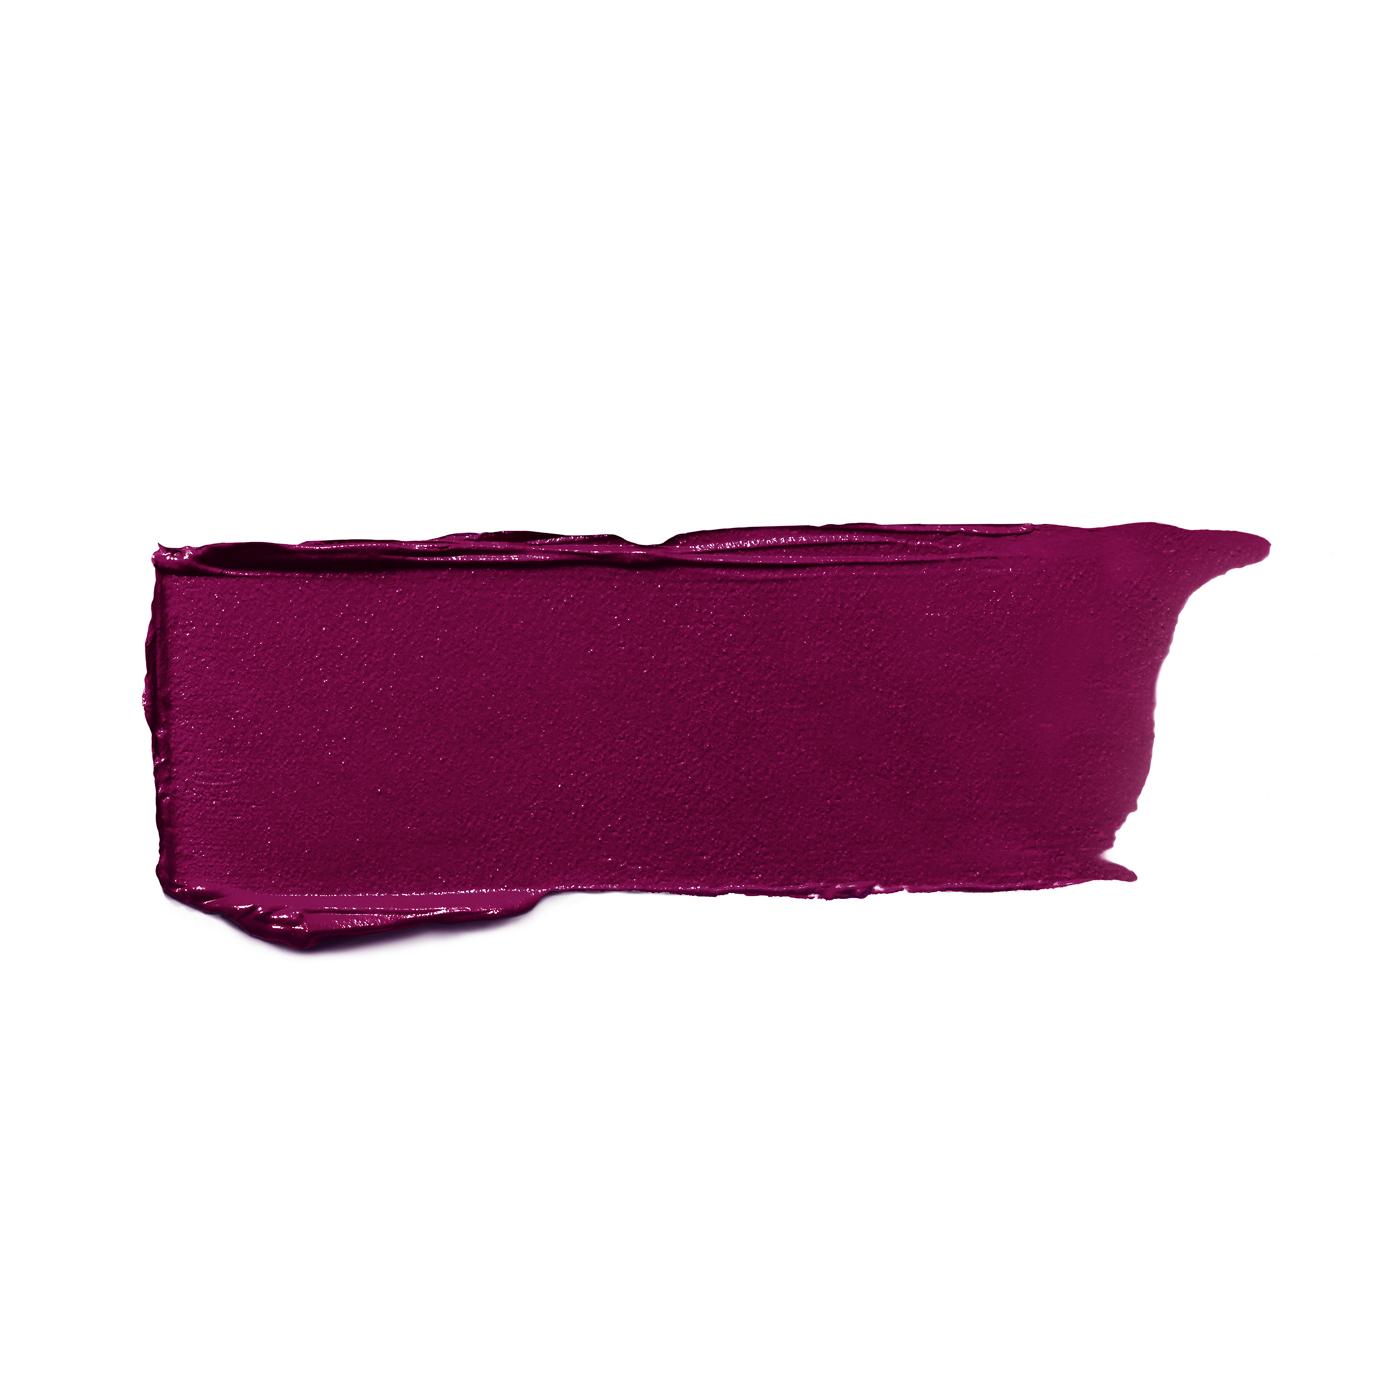 L'Oréal Paris Colour Riche Original Satin Lipstick for Moisturized Lips Golden Grape; image 2 of 2